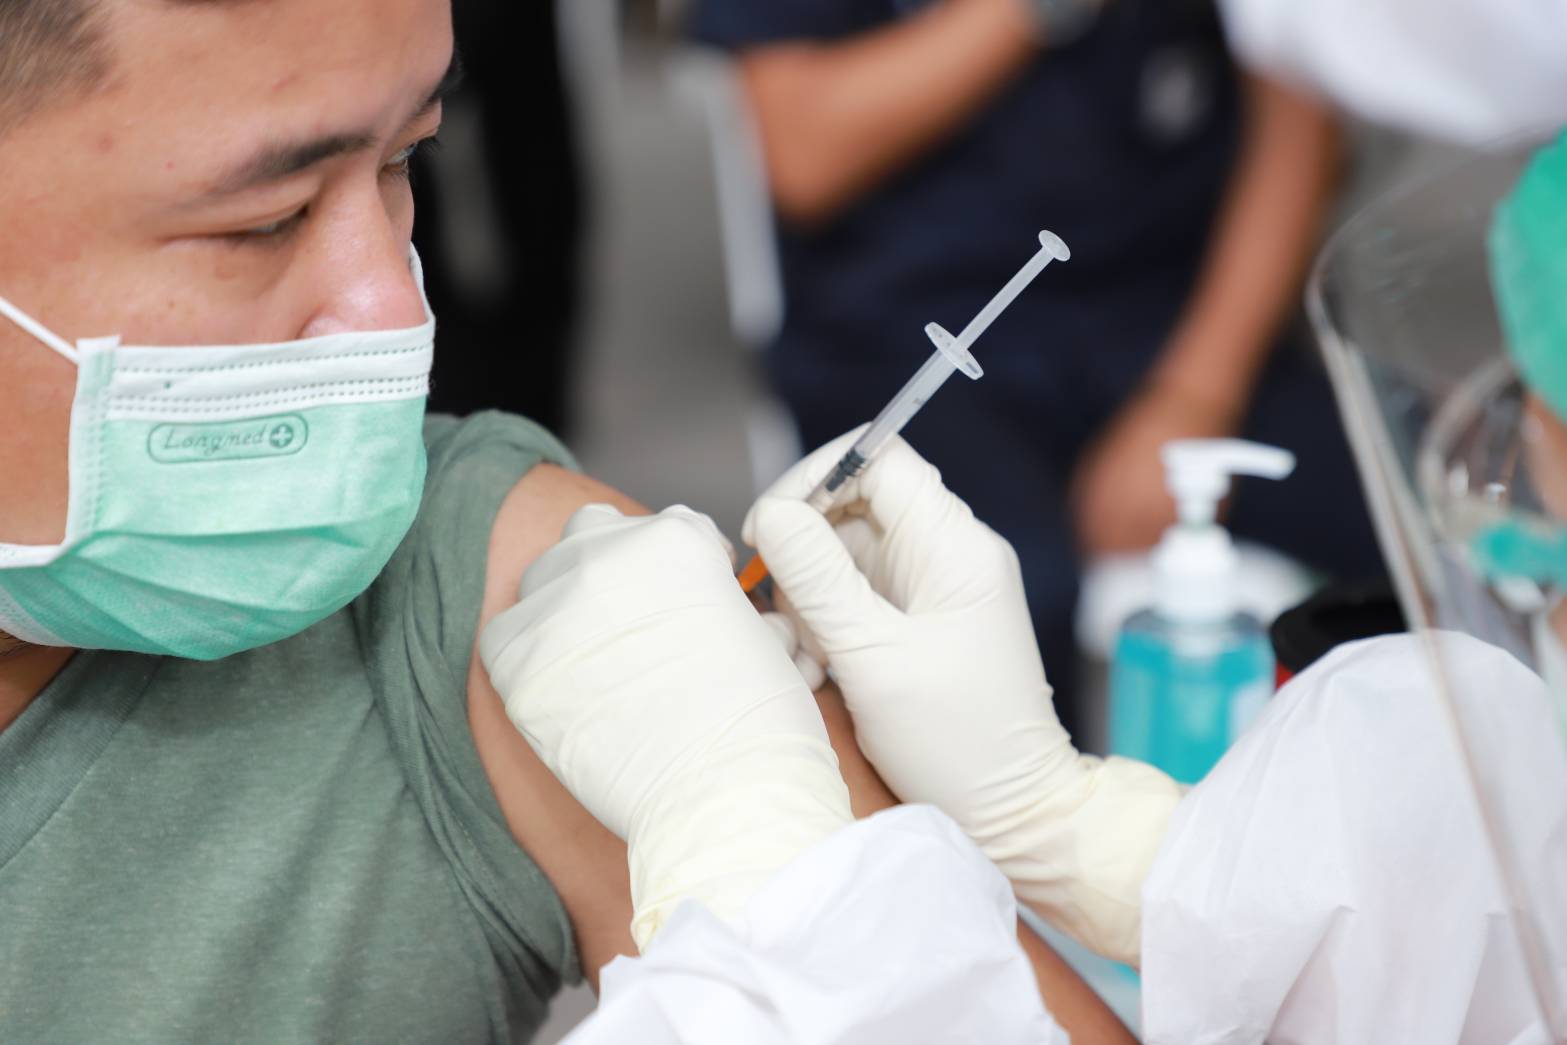 วัคซีนโควิด ผู้ประกันตน ม.33 ใน 4 จังหวัด เริ่มแล้ววันนี้ รองรับหมื่นคนต่อวัน – สังคม